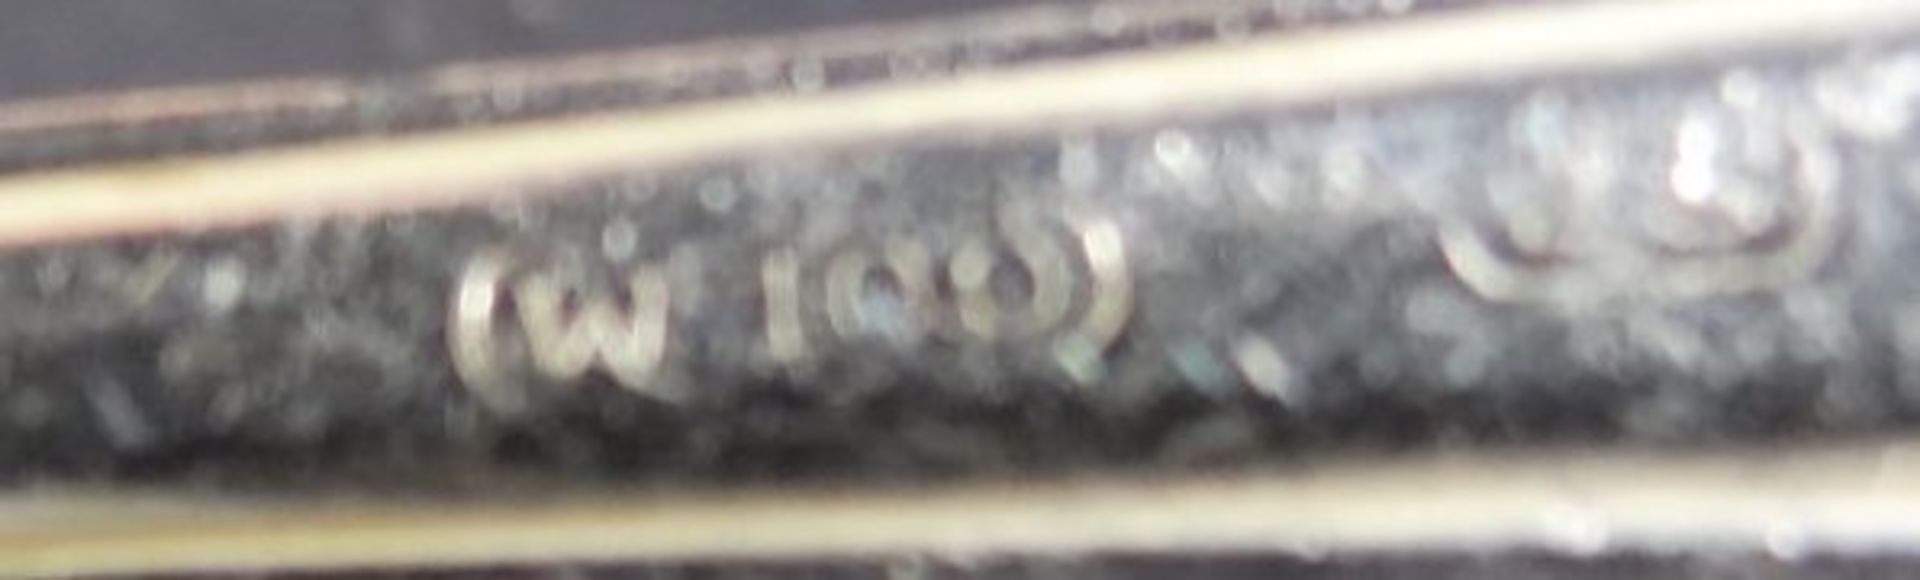 Teelöffel in Kasten, versilbert, L-13,5 c - Bild 4 aus 4